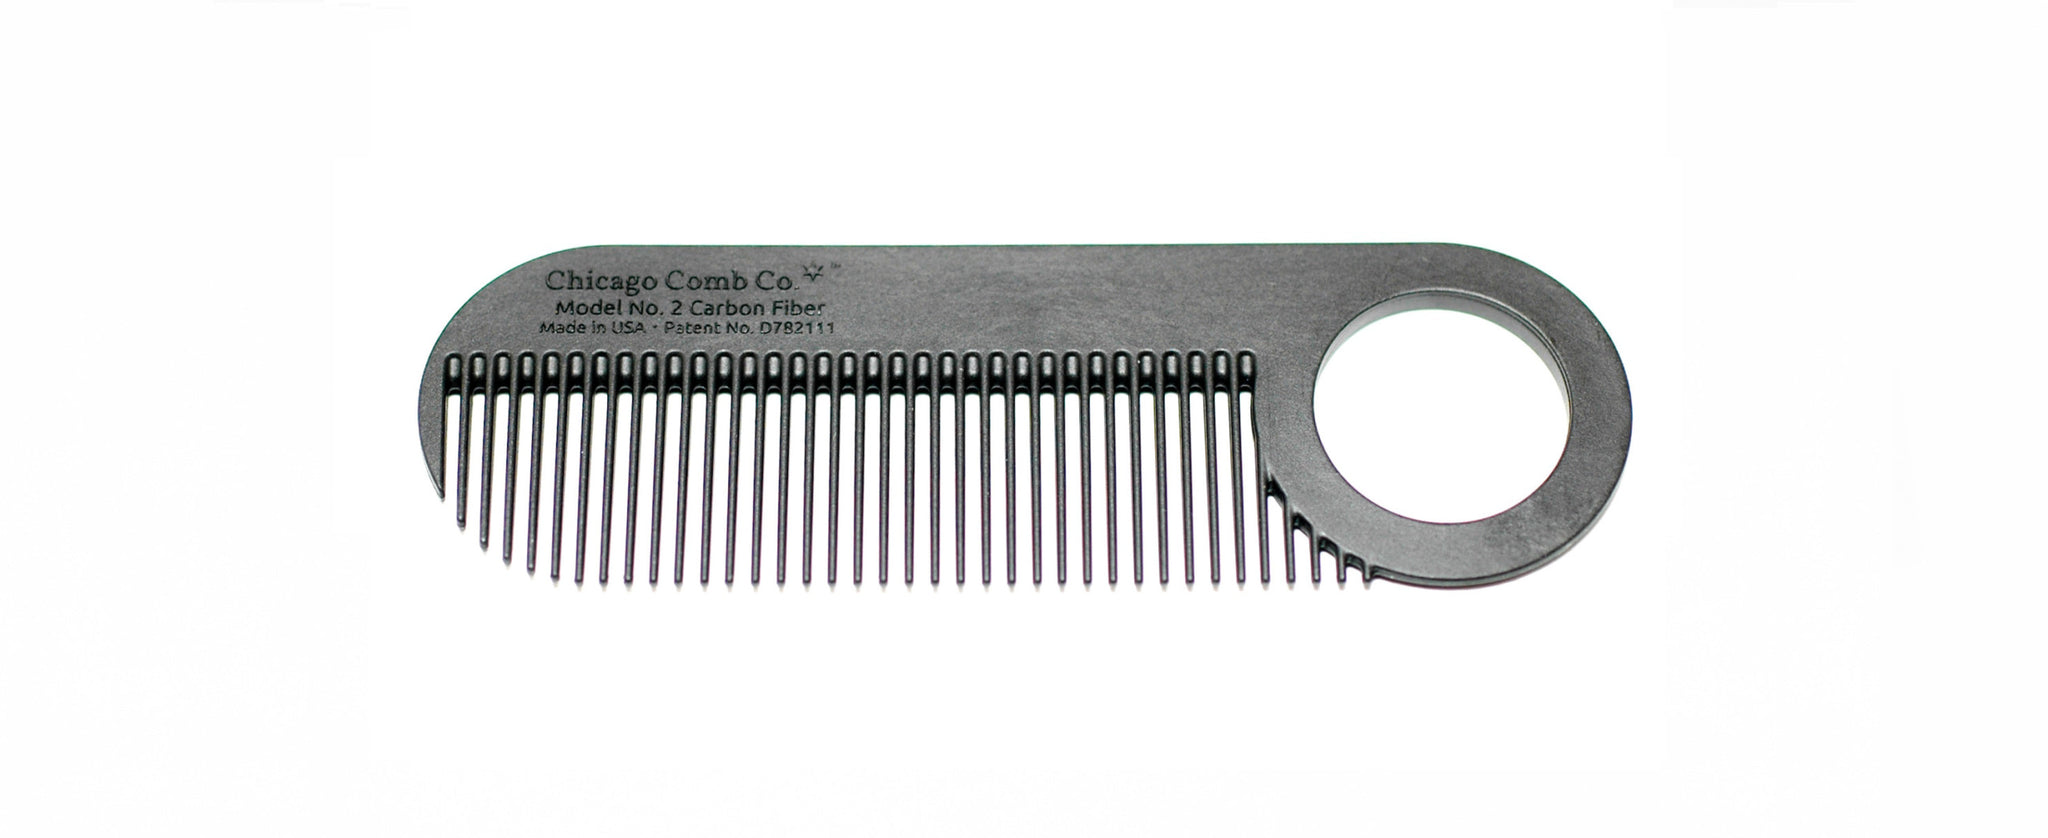 Model No. 2 Carbon Fiber Comb